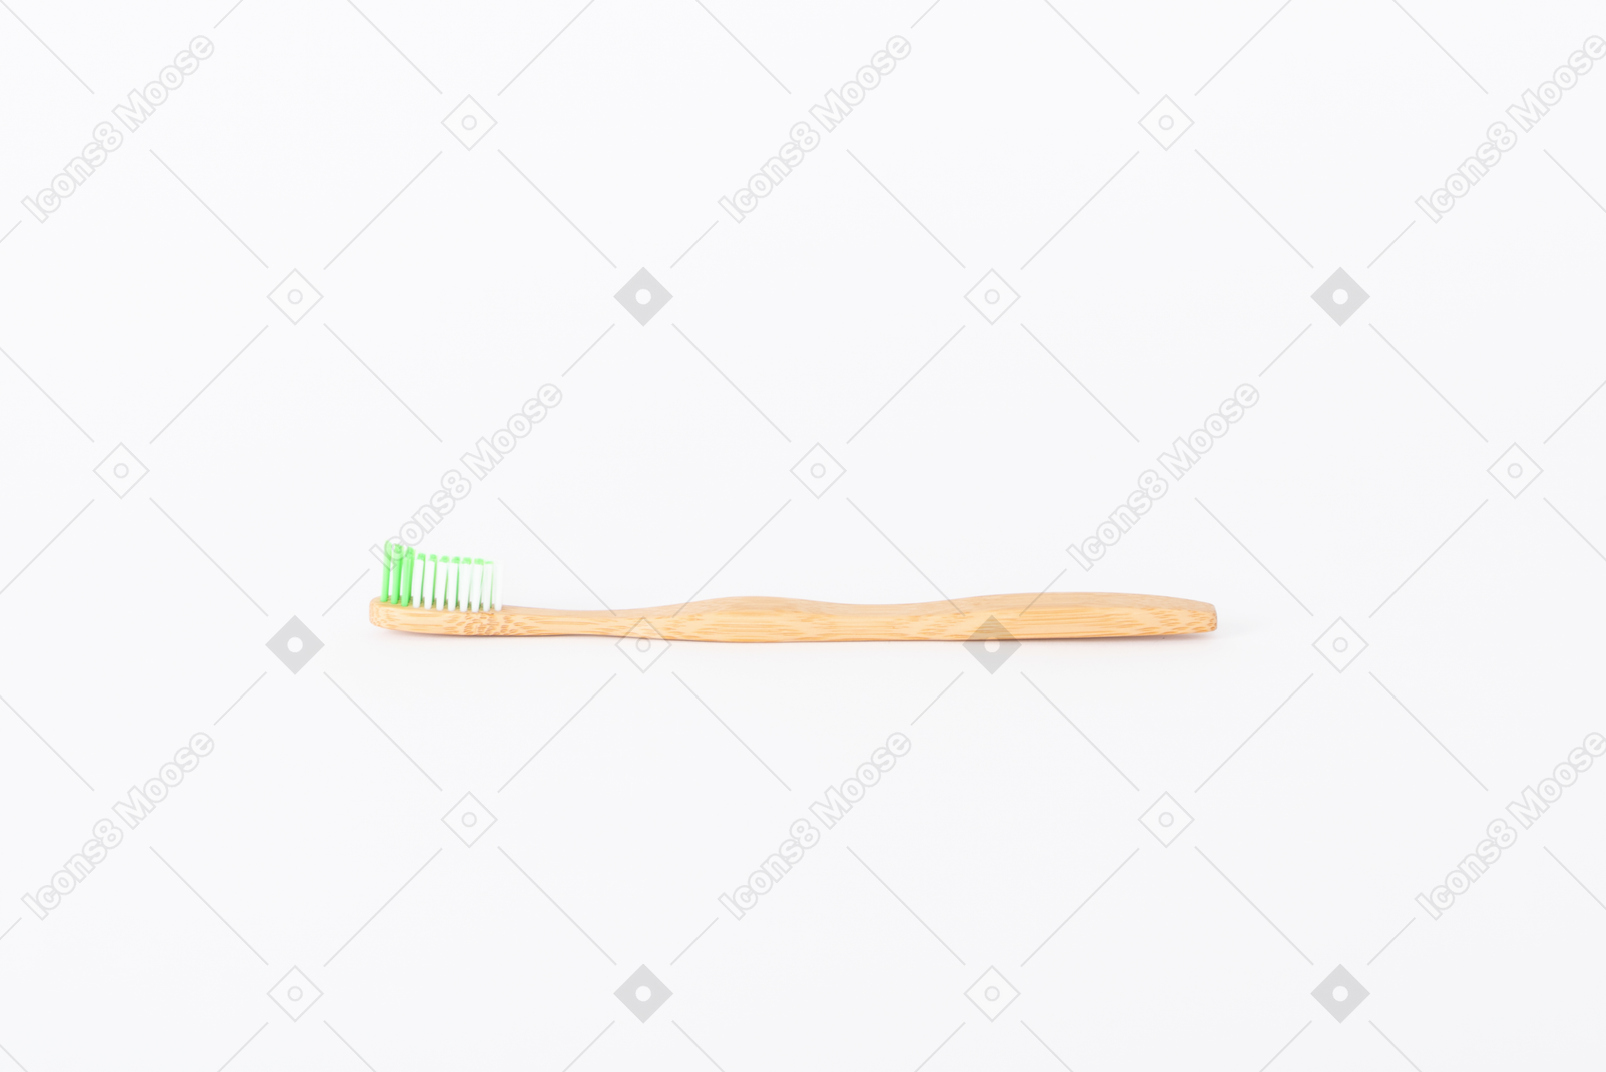 Holzgegenstände für die tägliche hygiene